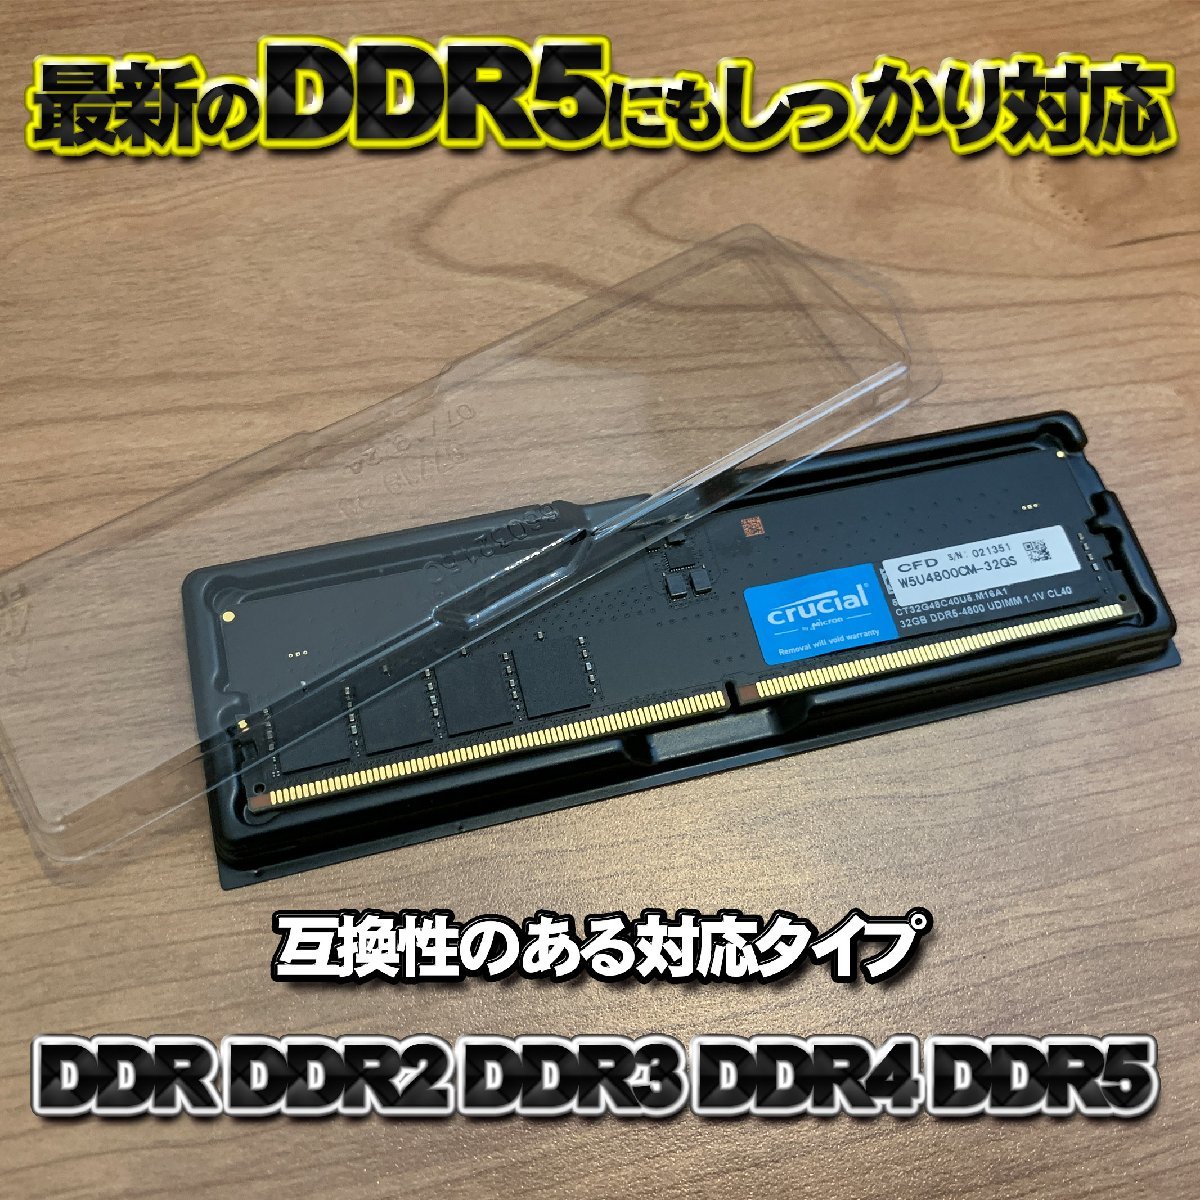 【 DDR 対応 】蓋付き PC メモリー シェルケース DIMM 用 プラスチック 保管 収納ケース 20枚セットの画像2